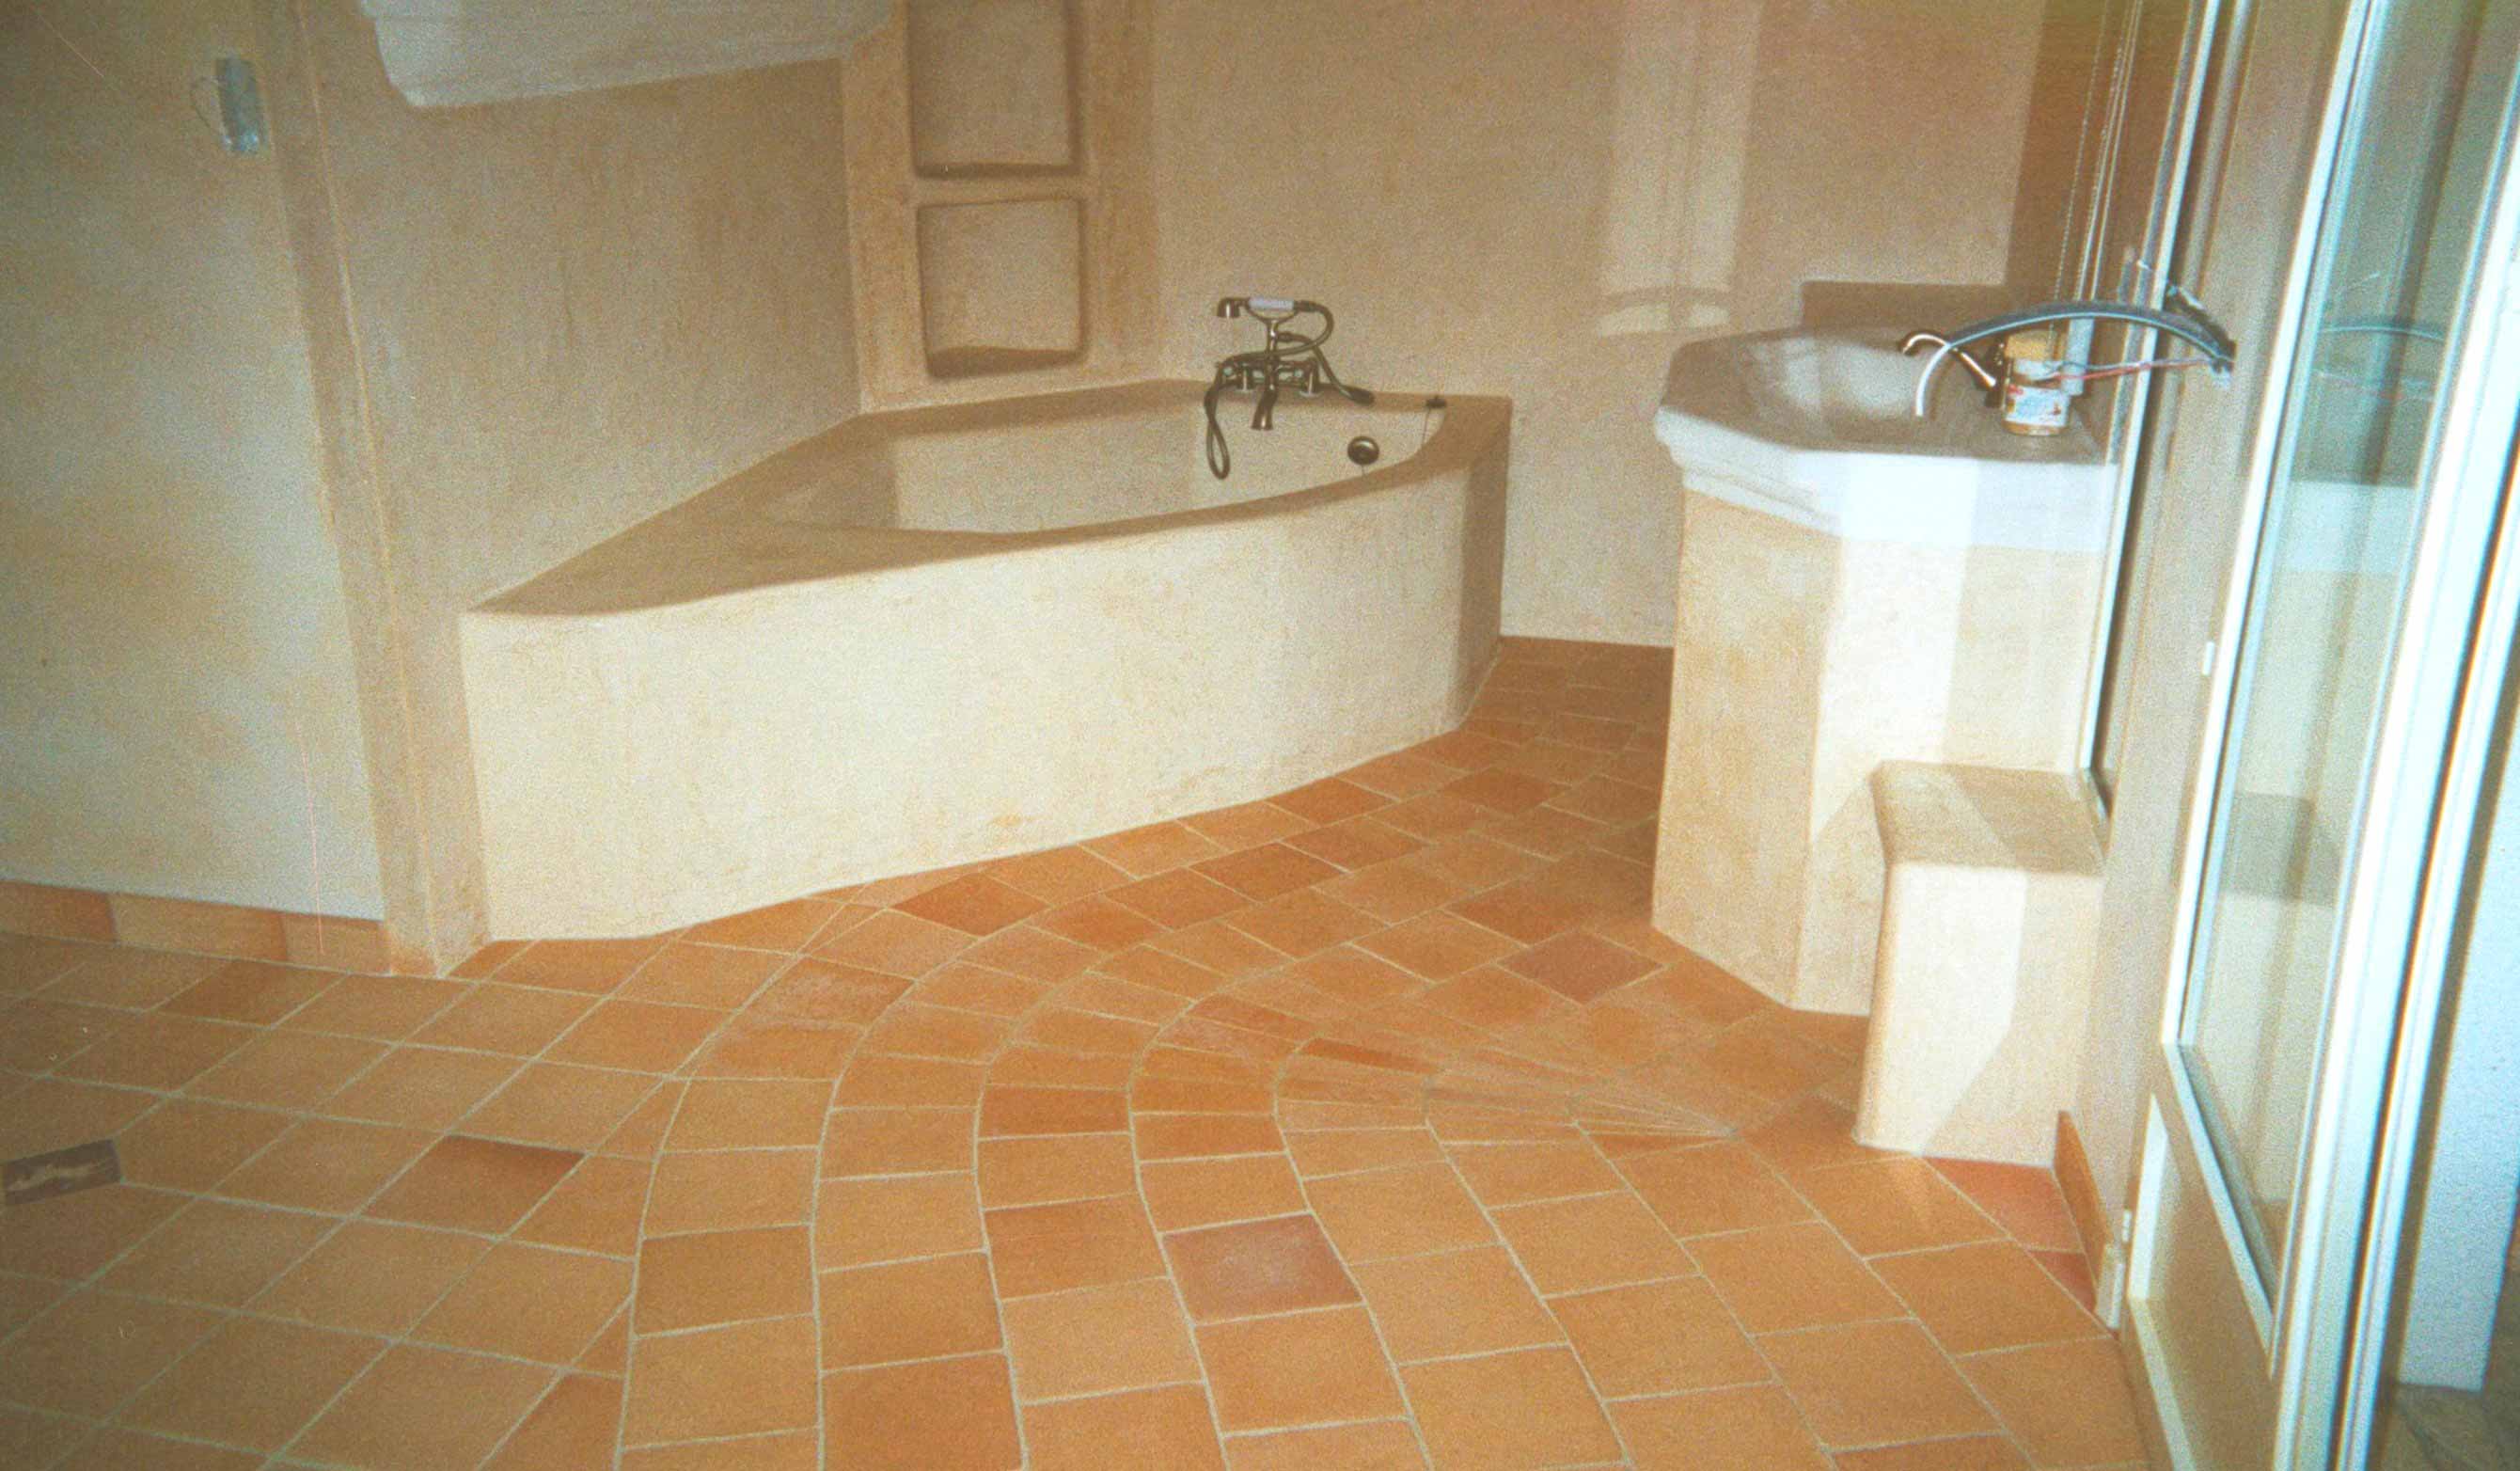 Salle de bain, sable orangé